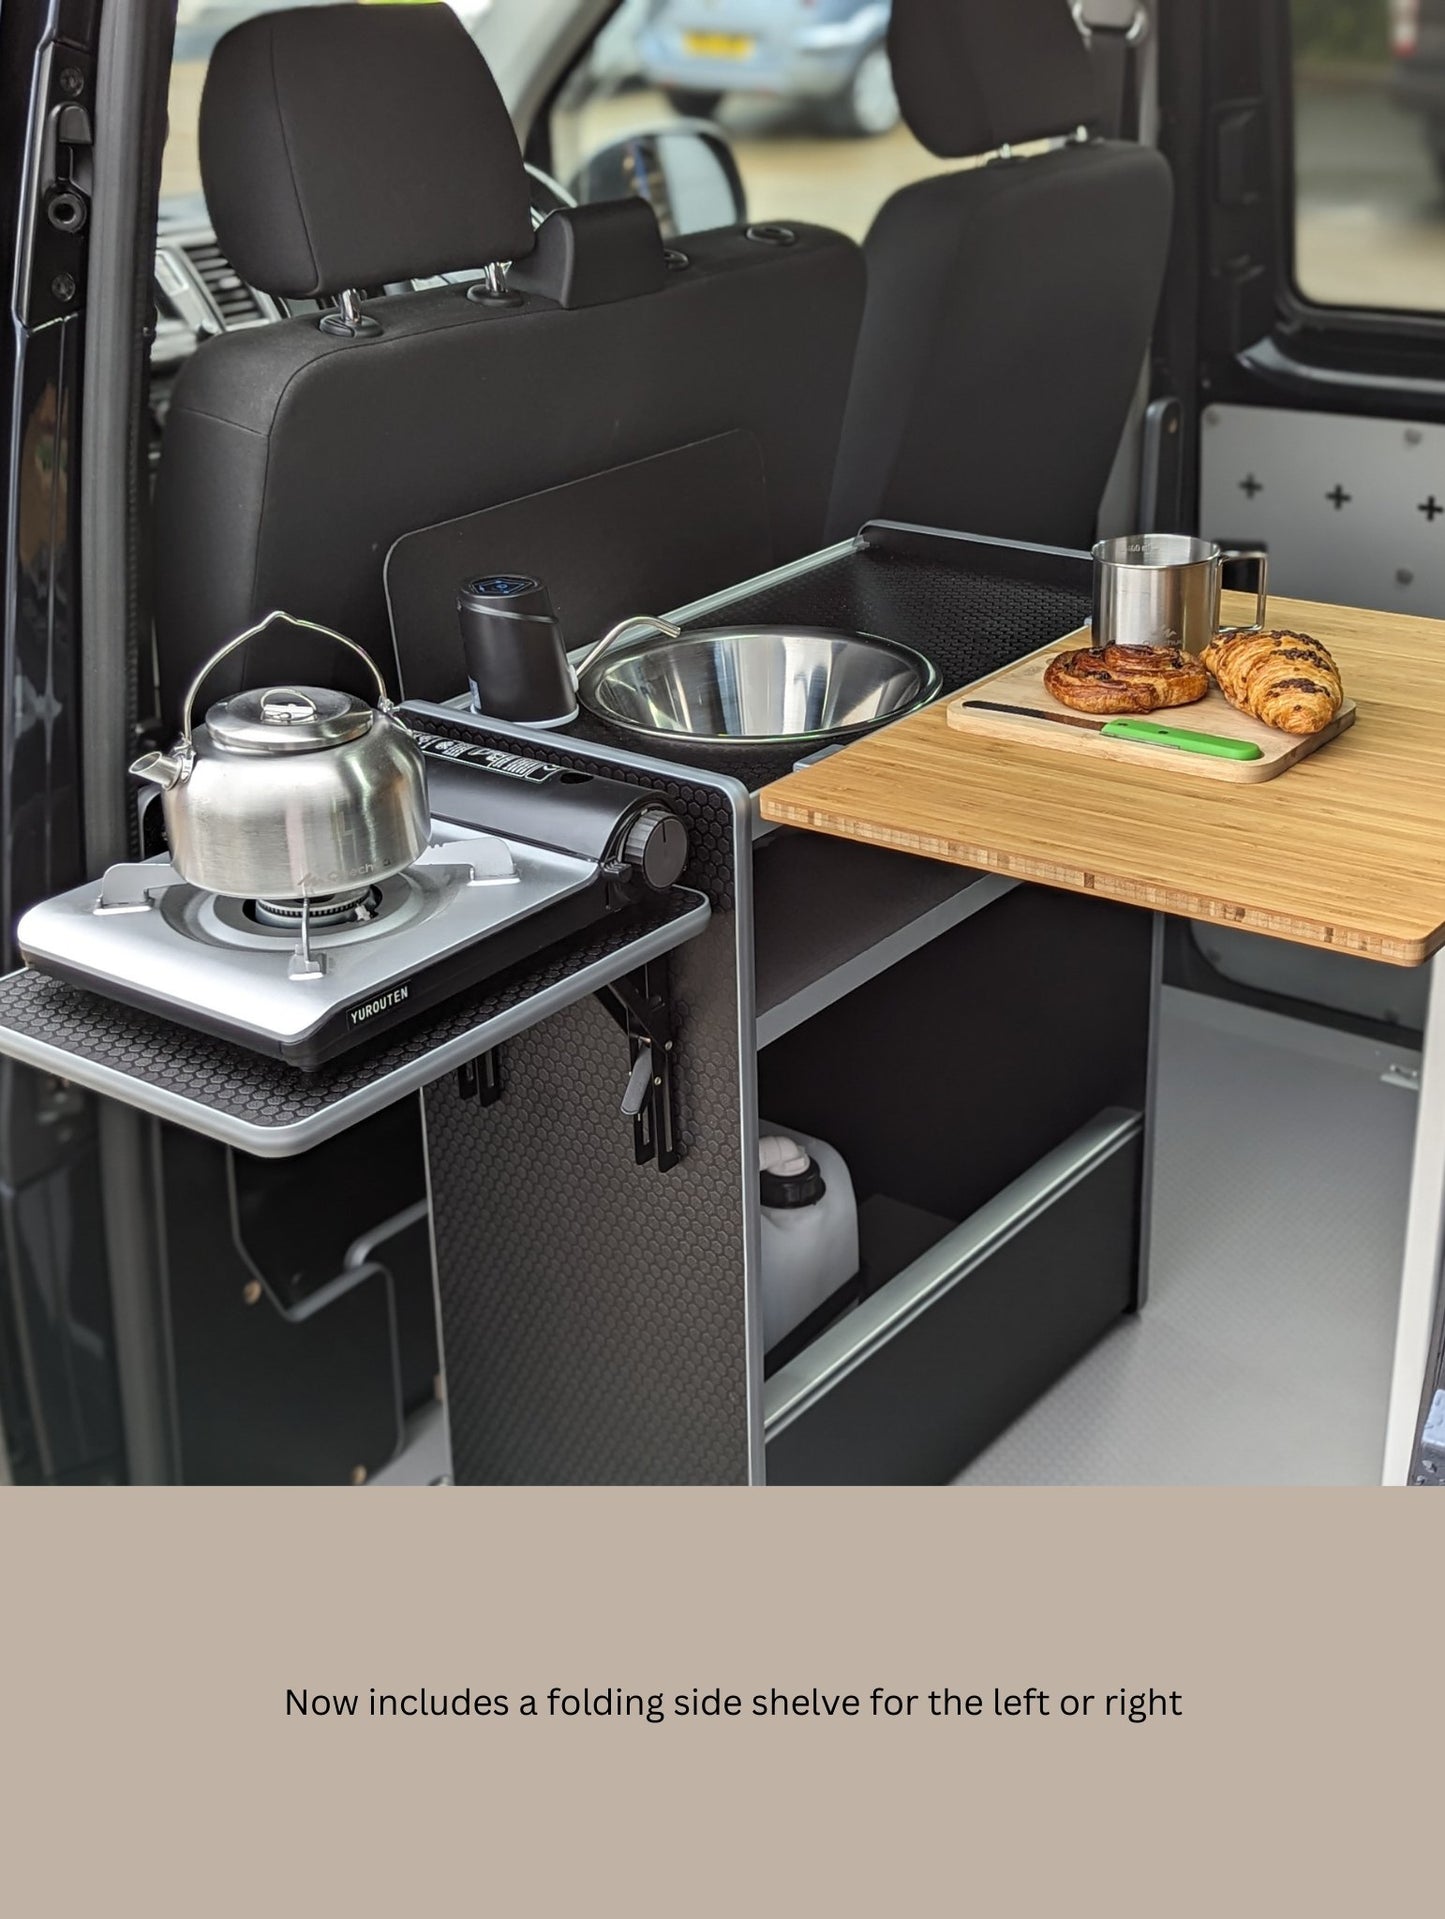 Vangear Nano-Pod campervan kitchen-Grey with Driftwood door - Vangear-EU